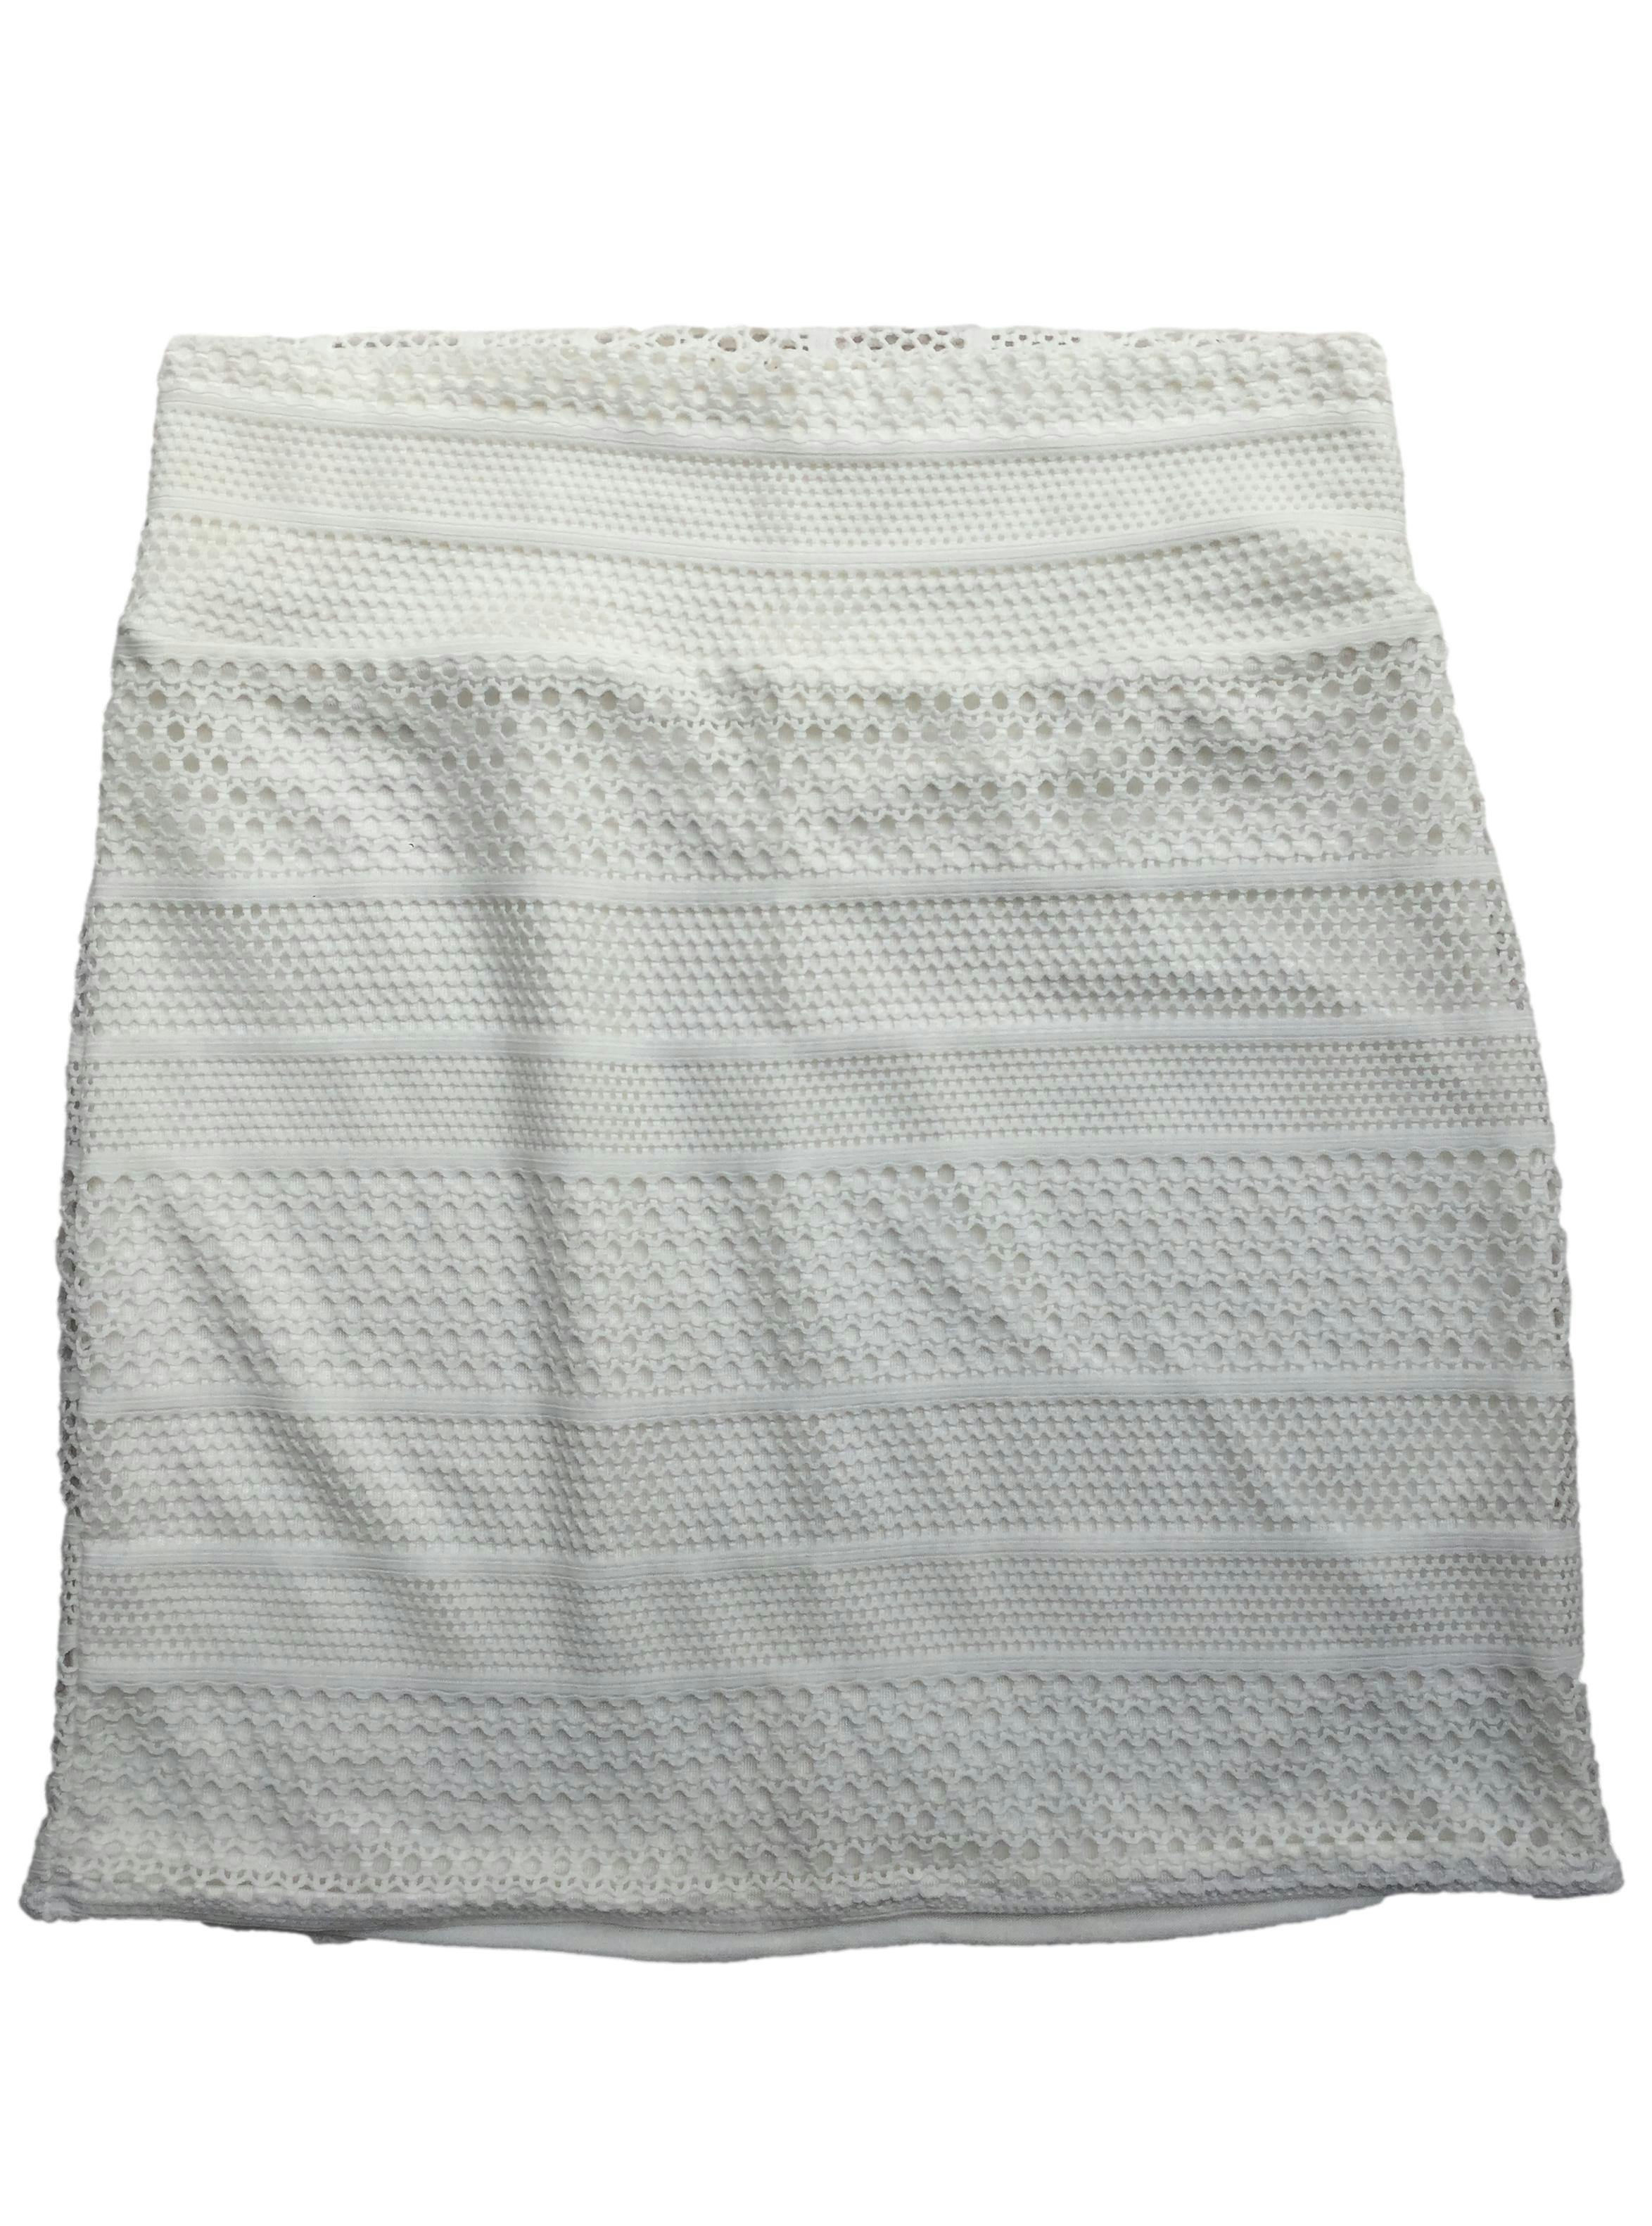 Falda blanca calada con forro, pretina ancha. Cintura: 60cm, Largo: 37cm